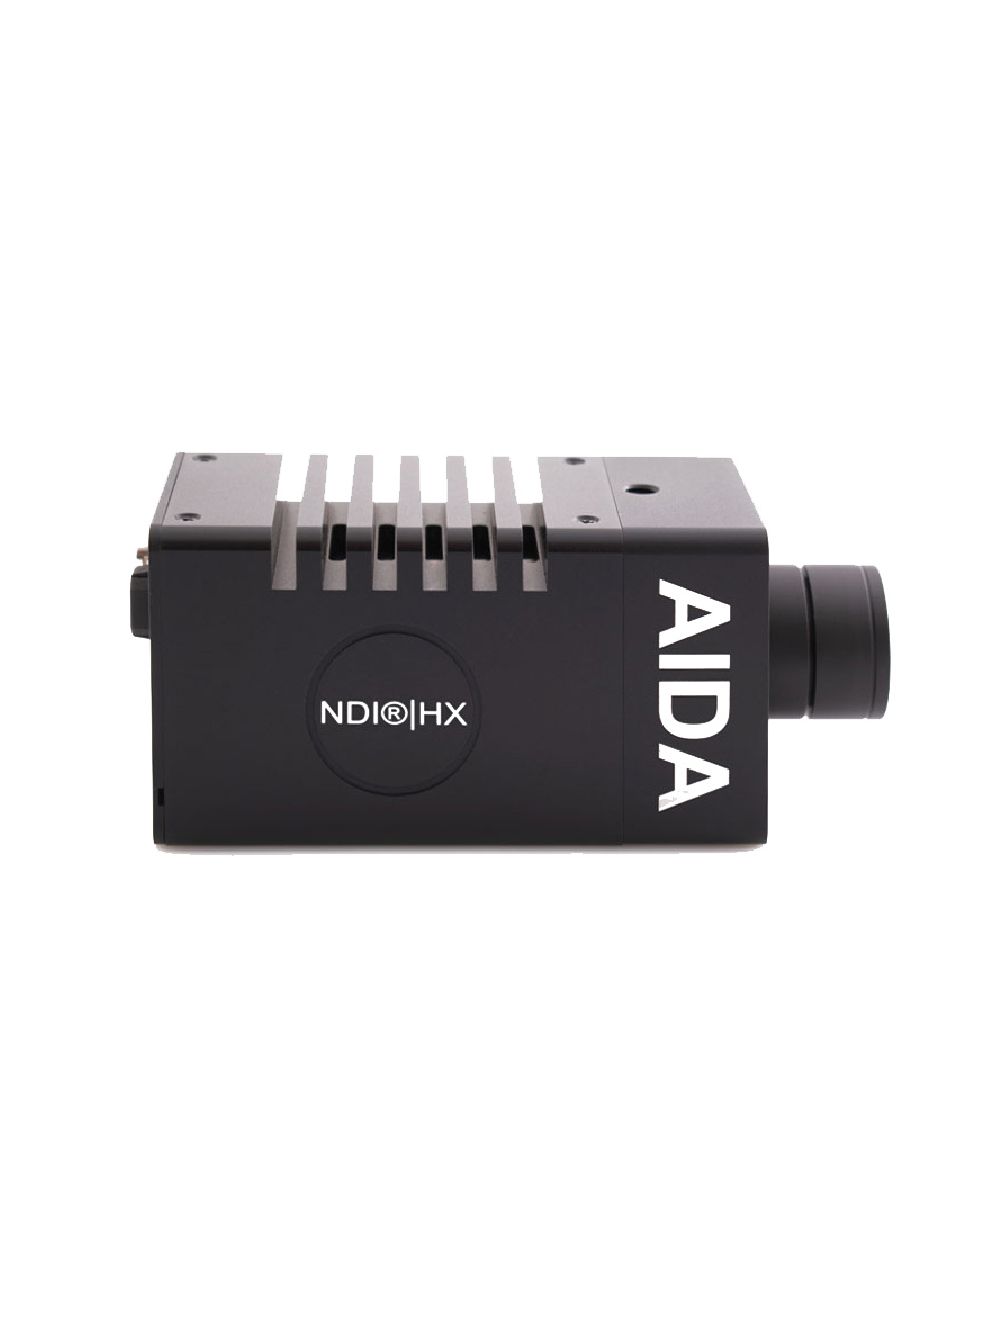 AIDA Imaging HD-NDI-200 Full-HD NDI|HX2 HDMI POV Camera